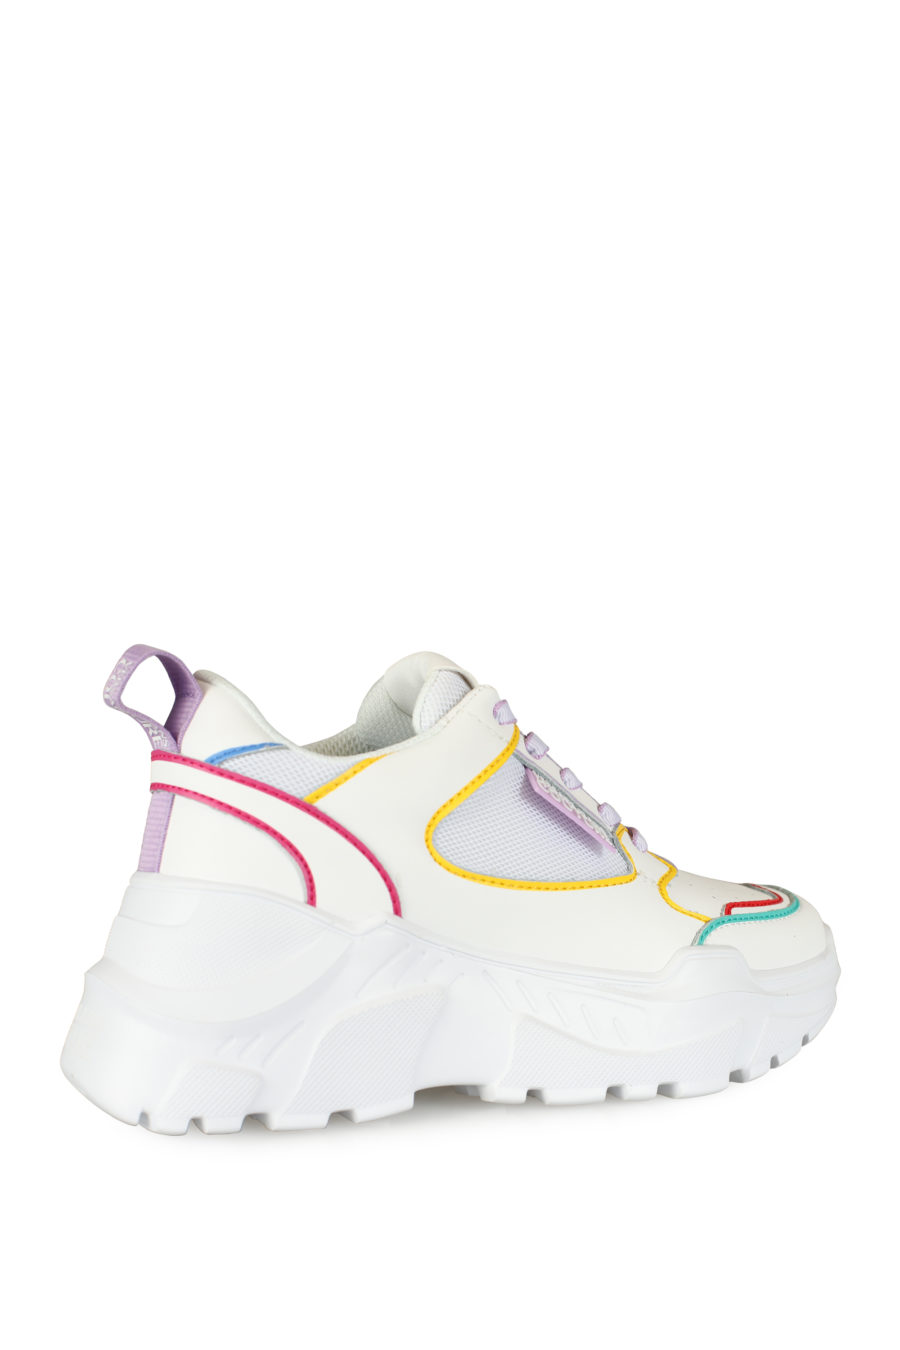 Zapatillas blancas con detalles de colores - IMG 3435